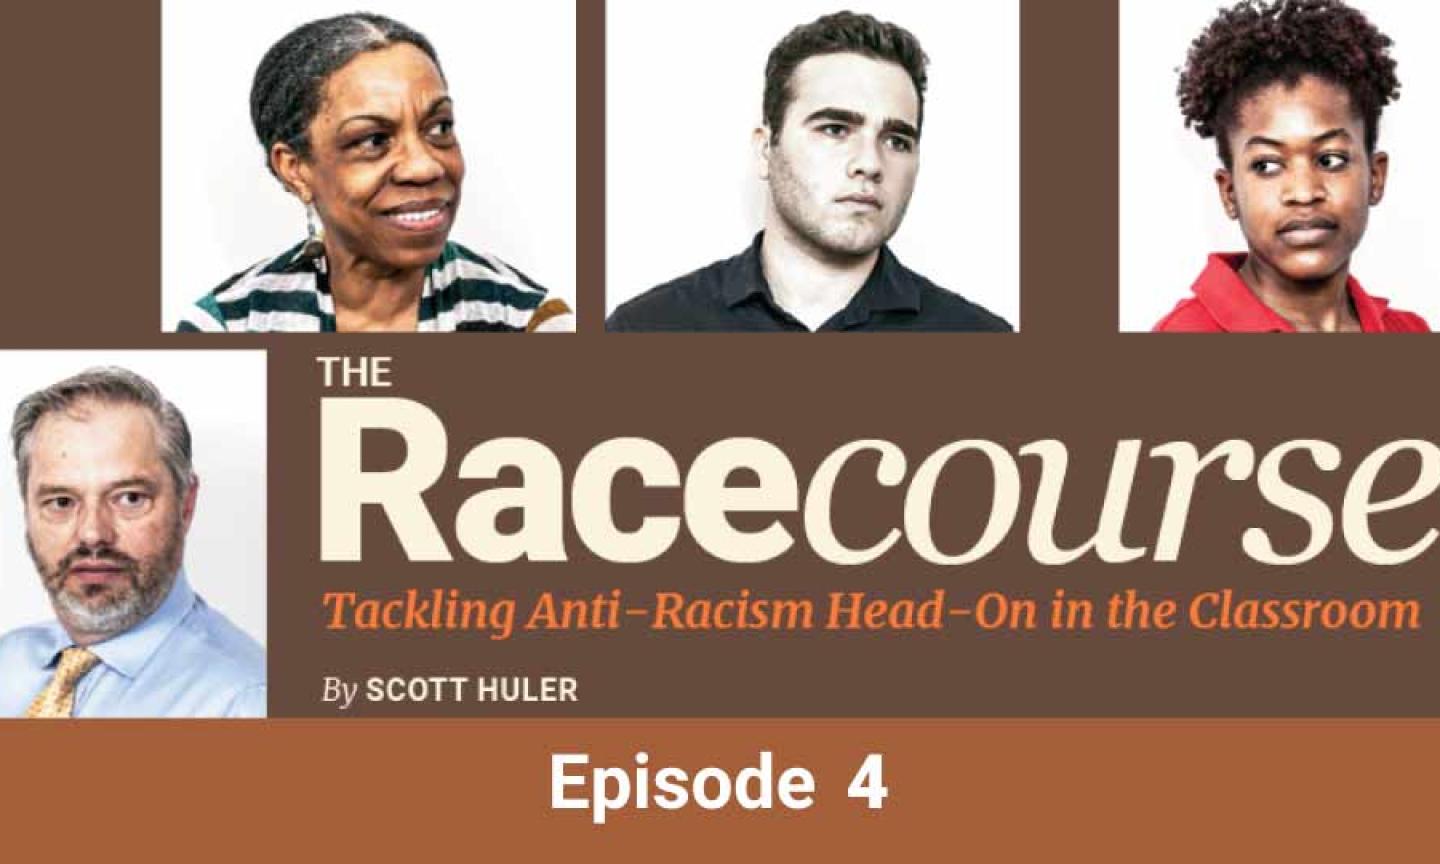 The Racecourse: Episode 4